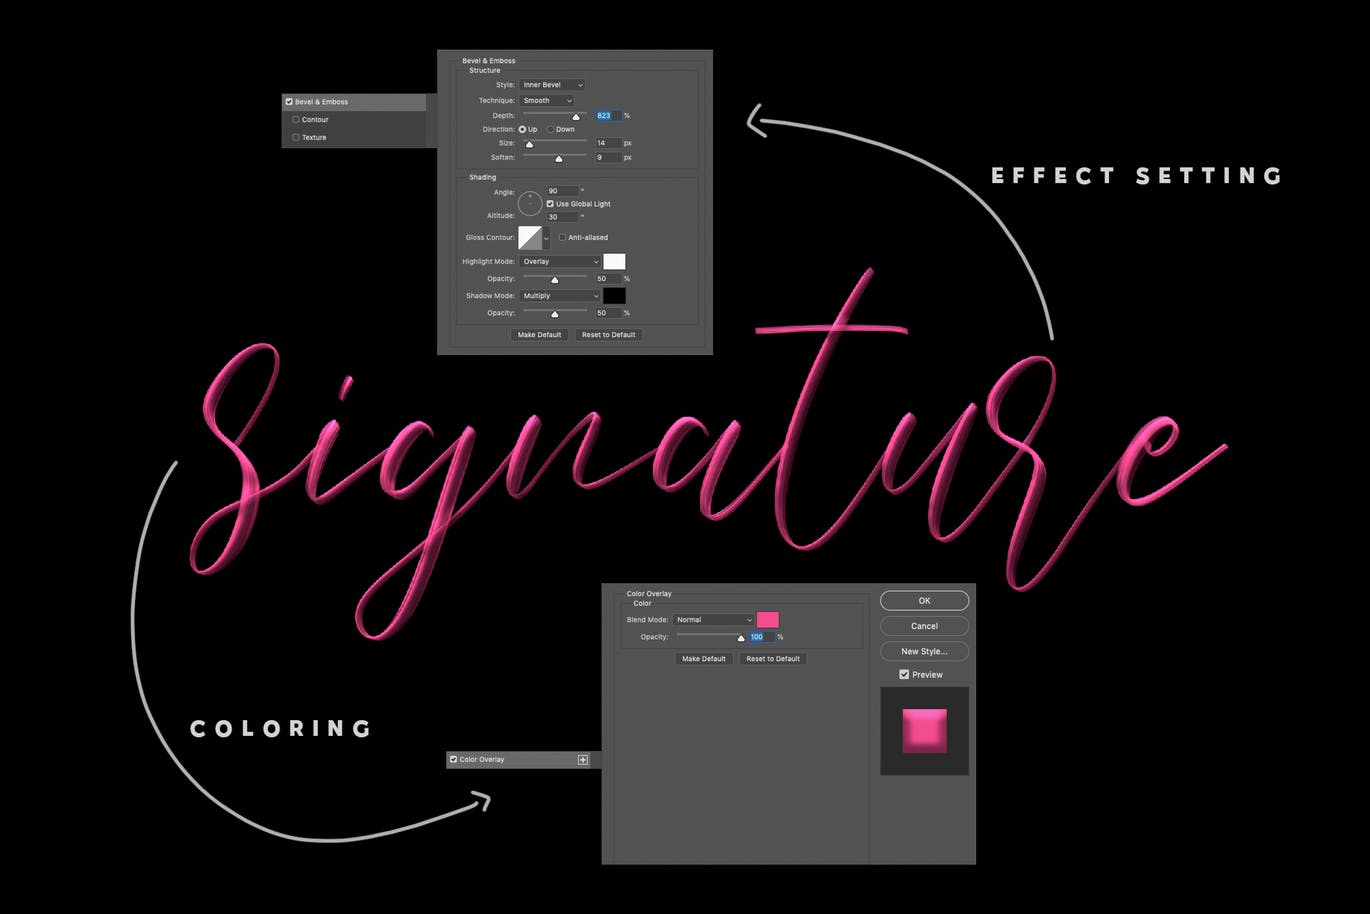 时尚高端简约流行风格的高品质手写字体Love Brush SVG英文字体设计素材模板